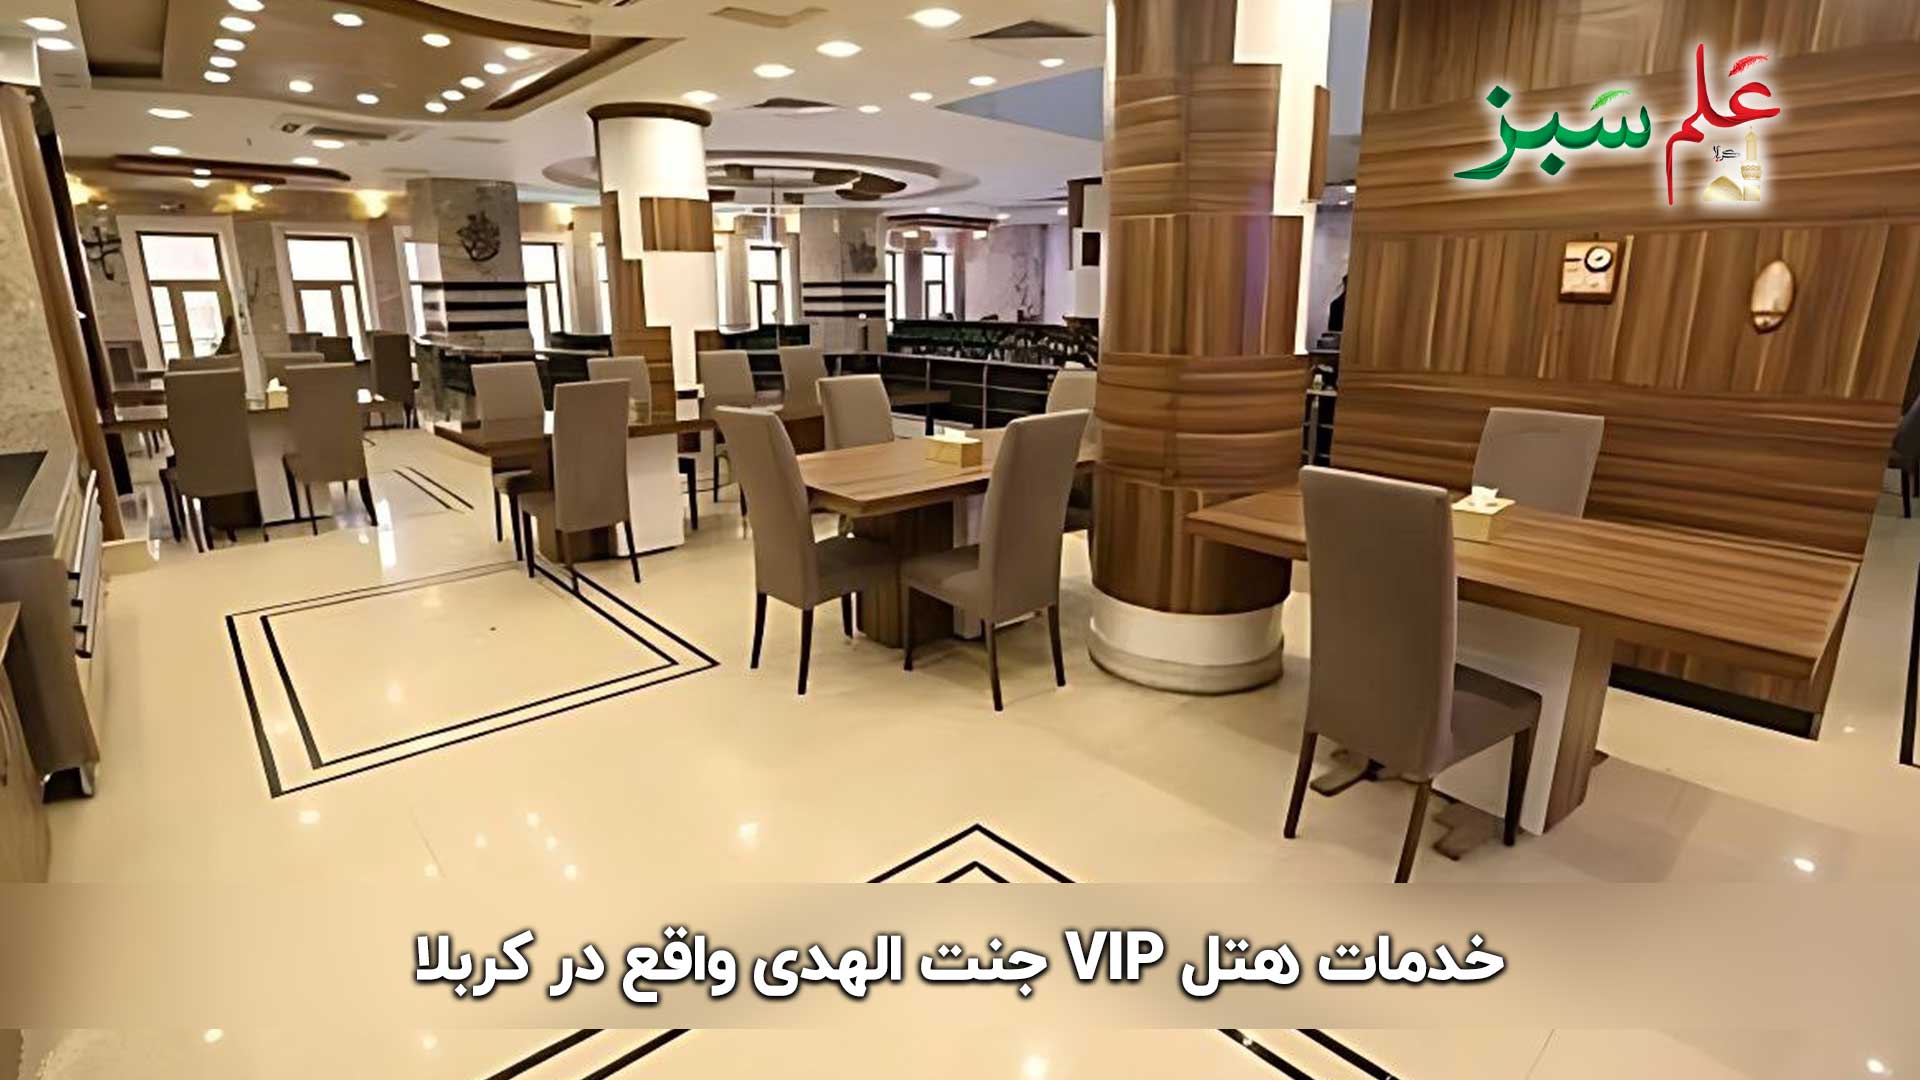 خدمات هتل VIP جنت الهدی واقع در کربلا